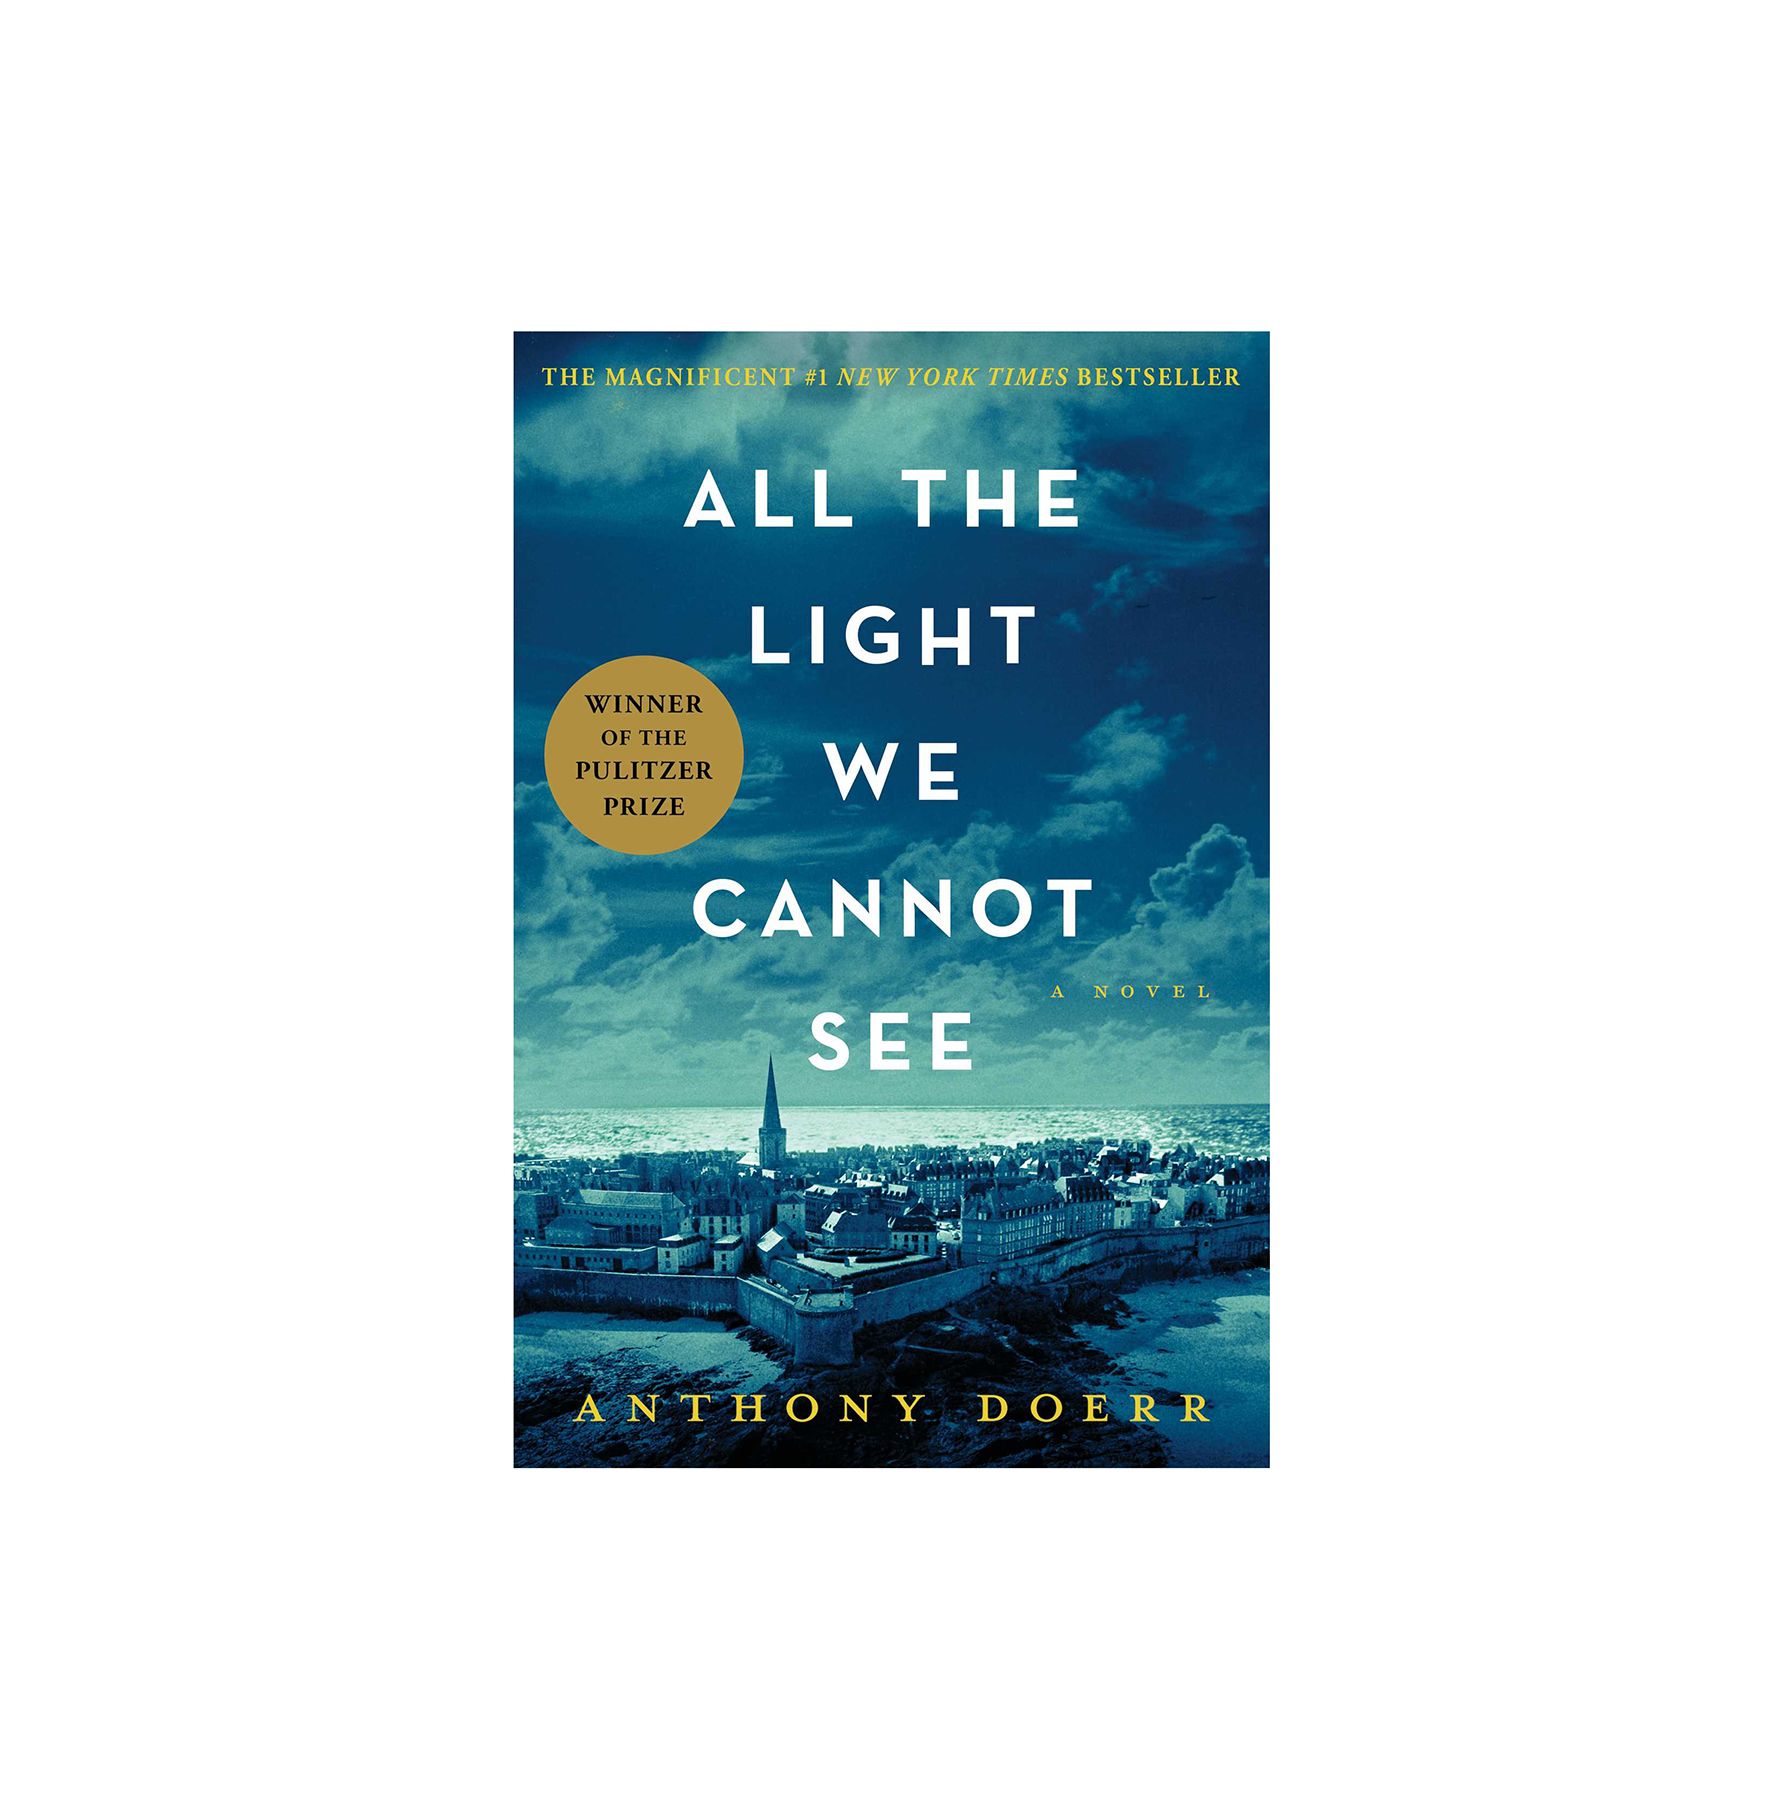 Բոլոր այն լույսերը, որոնք մենք չենք կարող տեսնել, հեղինակ ՝ Էնթոնի Դոեր